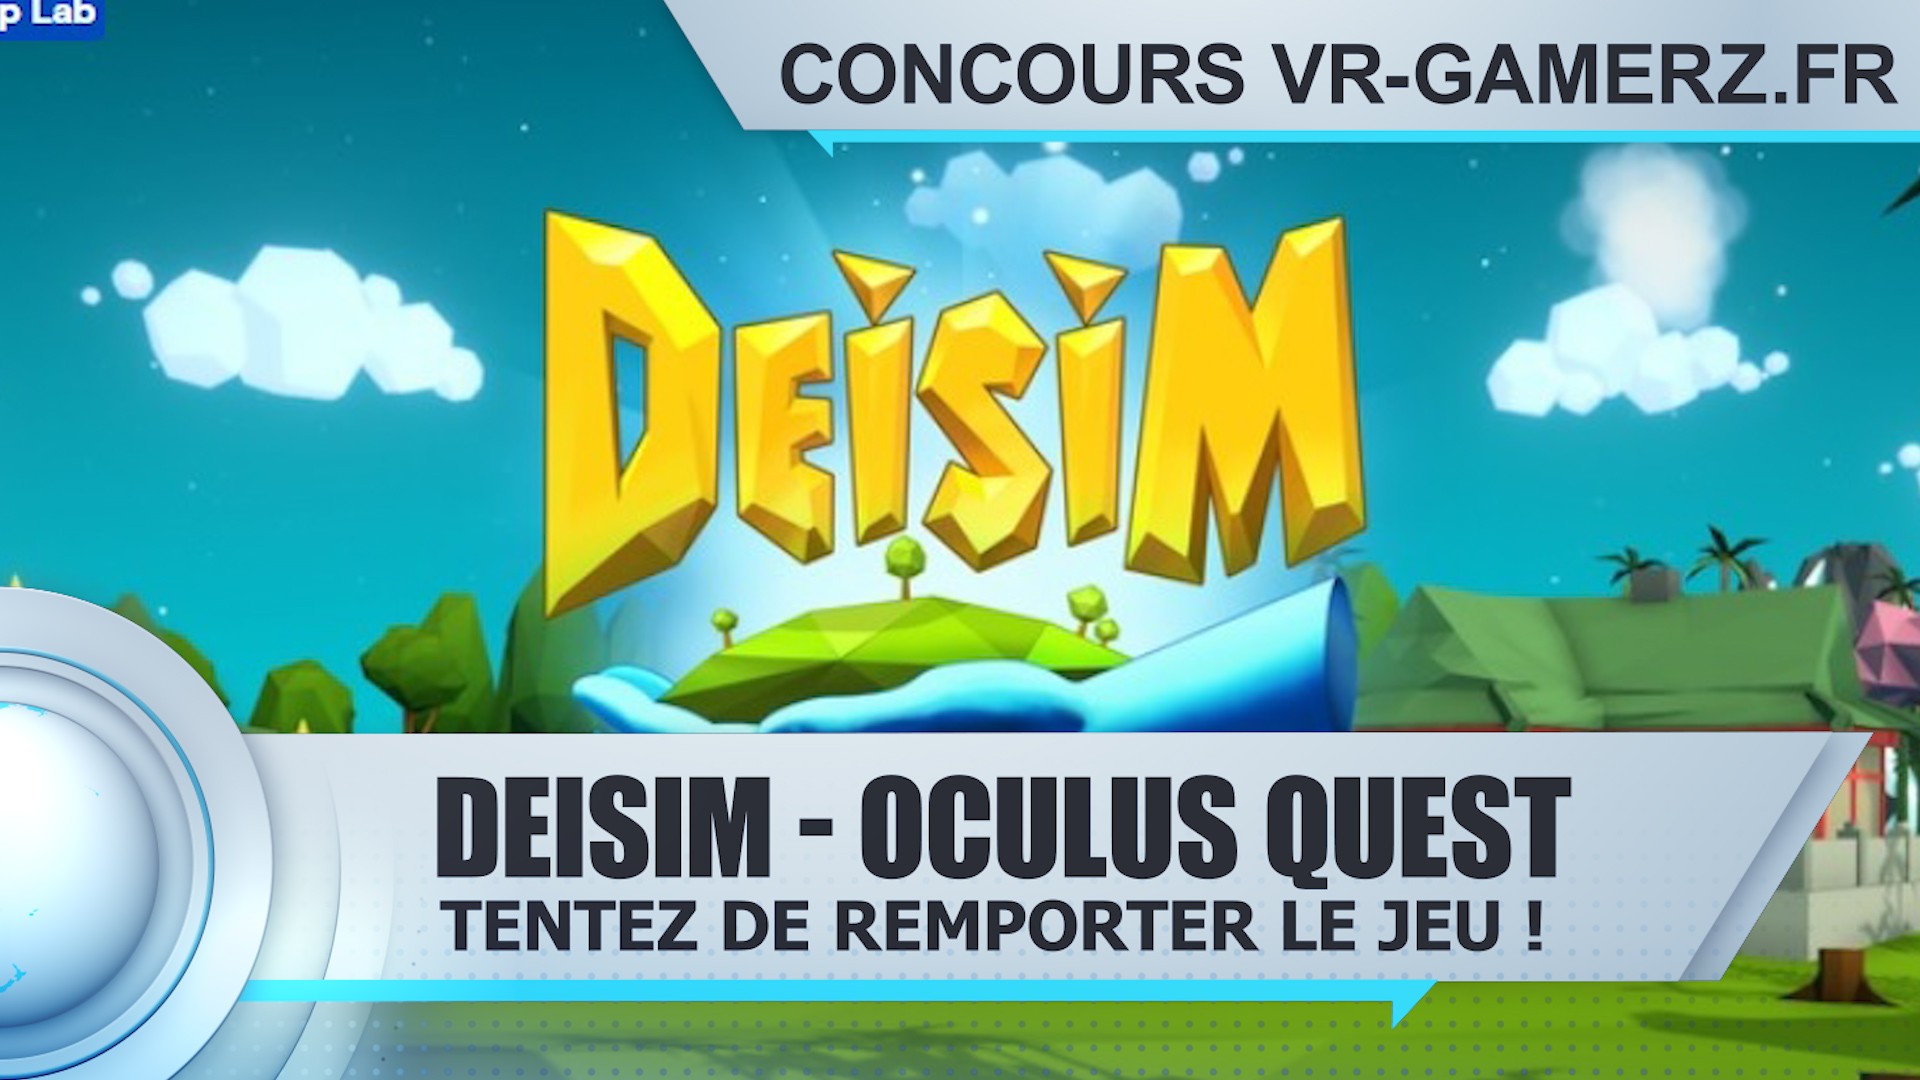 Résultat Concours : Tentez de remporter Deisim sur Oculus quest !